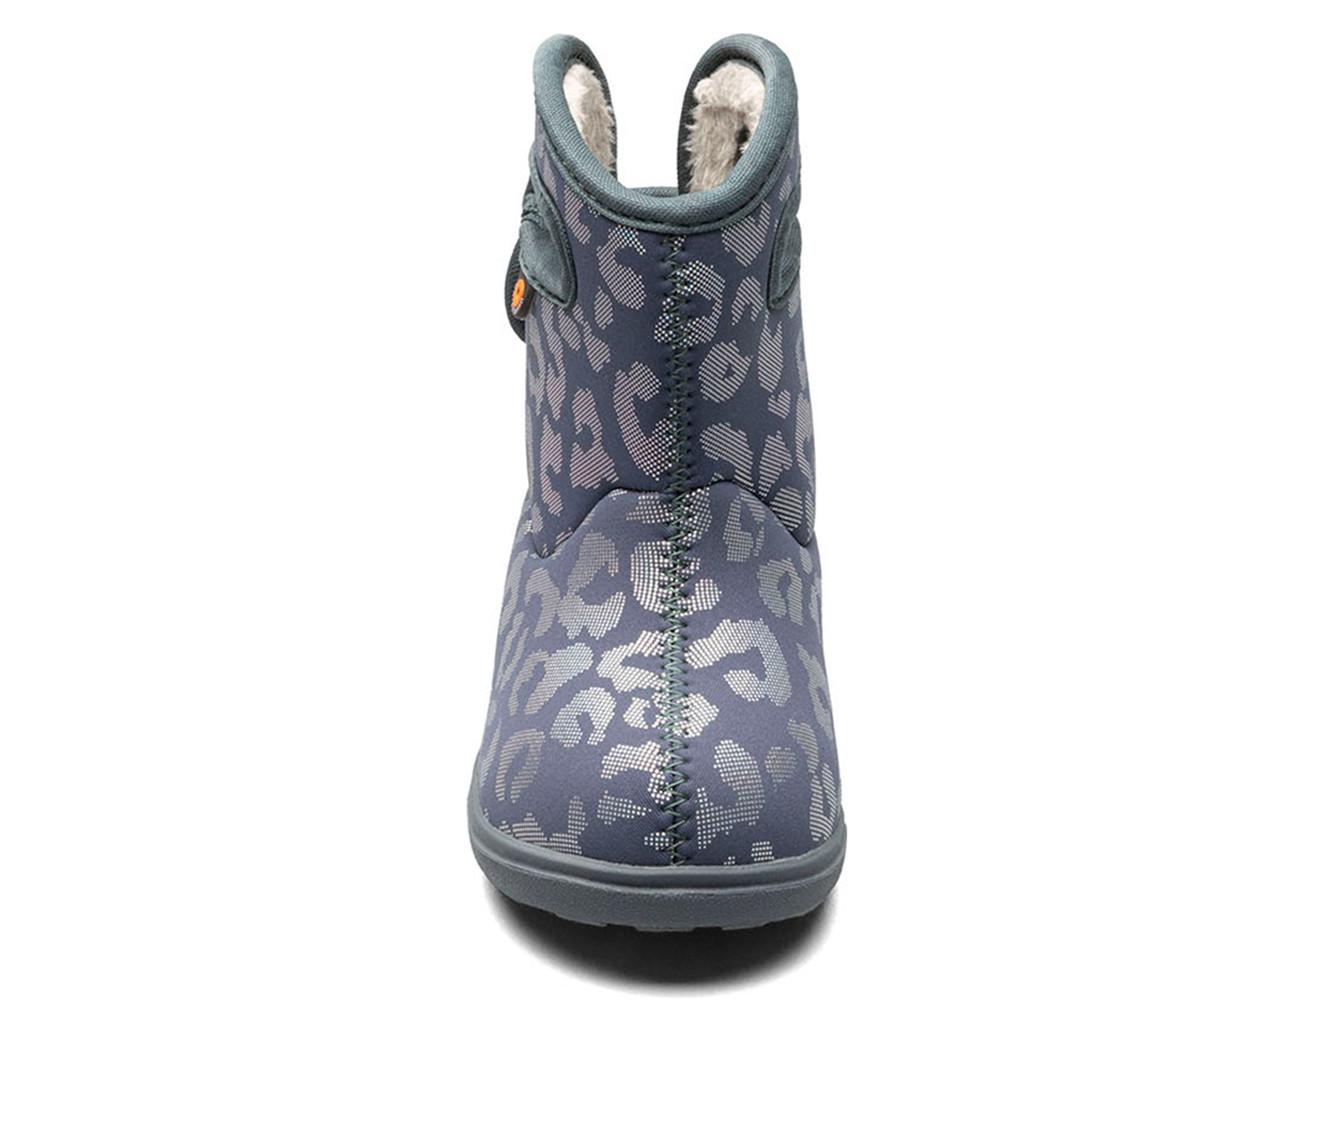 Girls' Bogs Footwear Toddler Bogs II Metallic Leopard Rain Boots